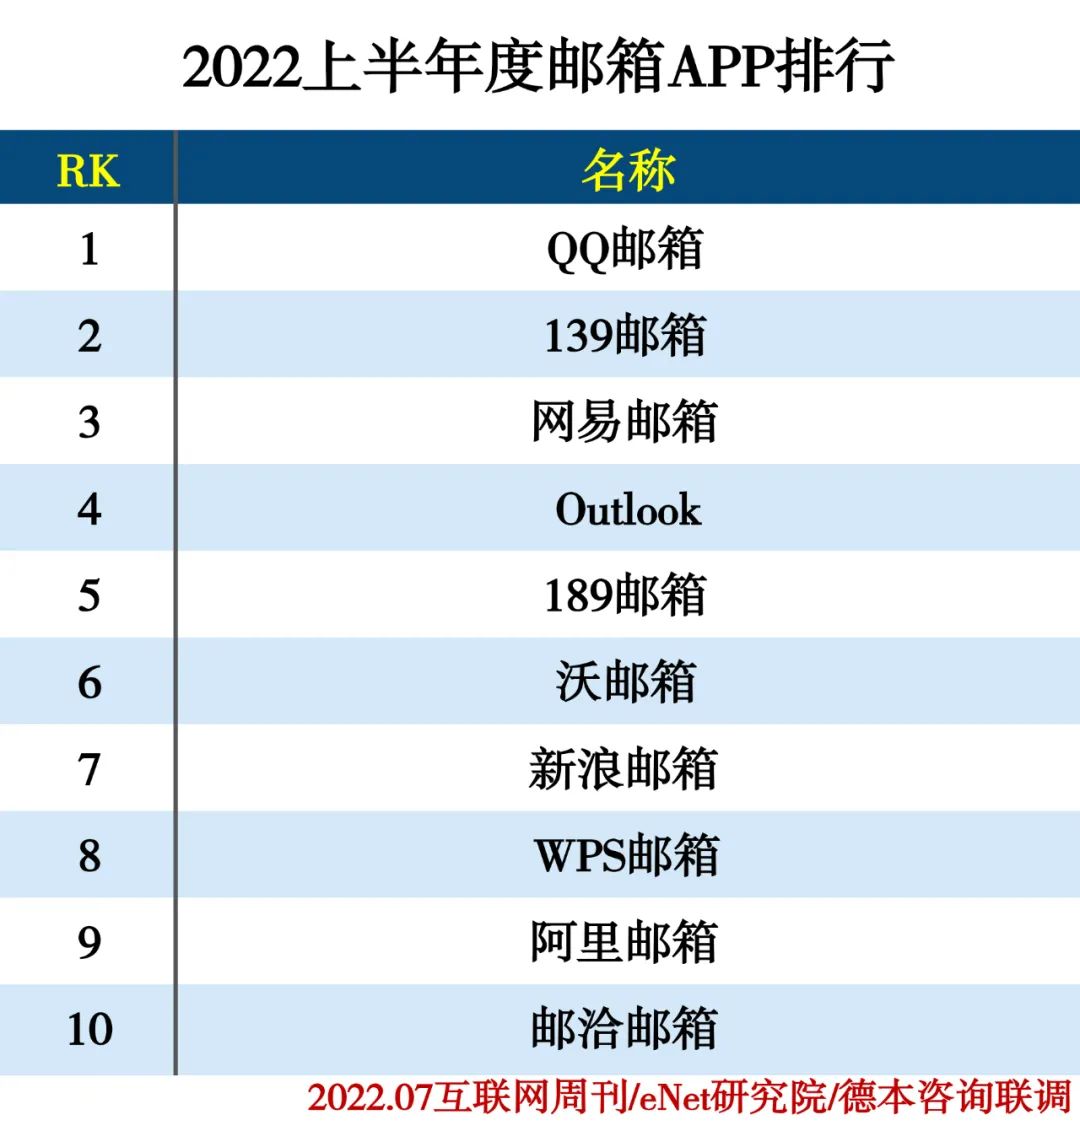 2022上半年度APP分类排行